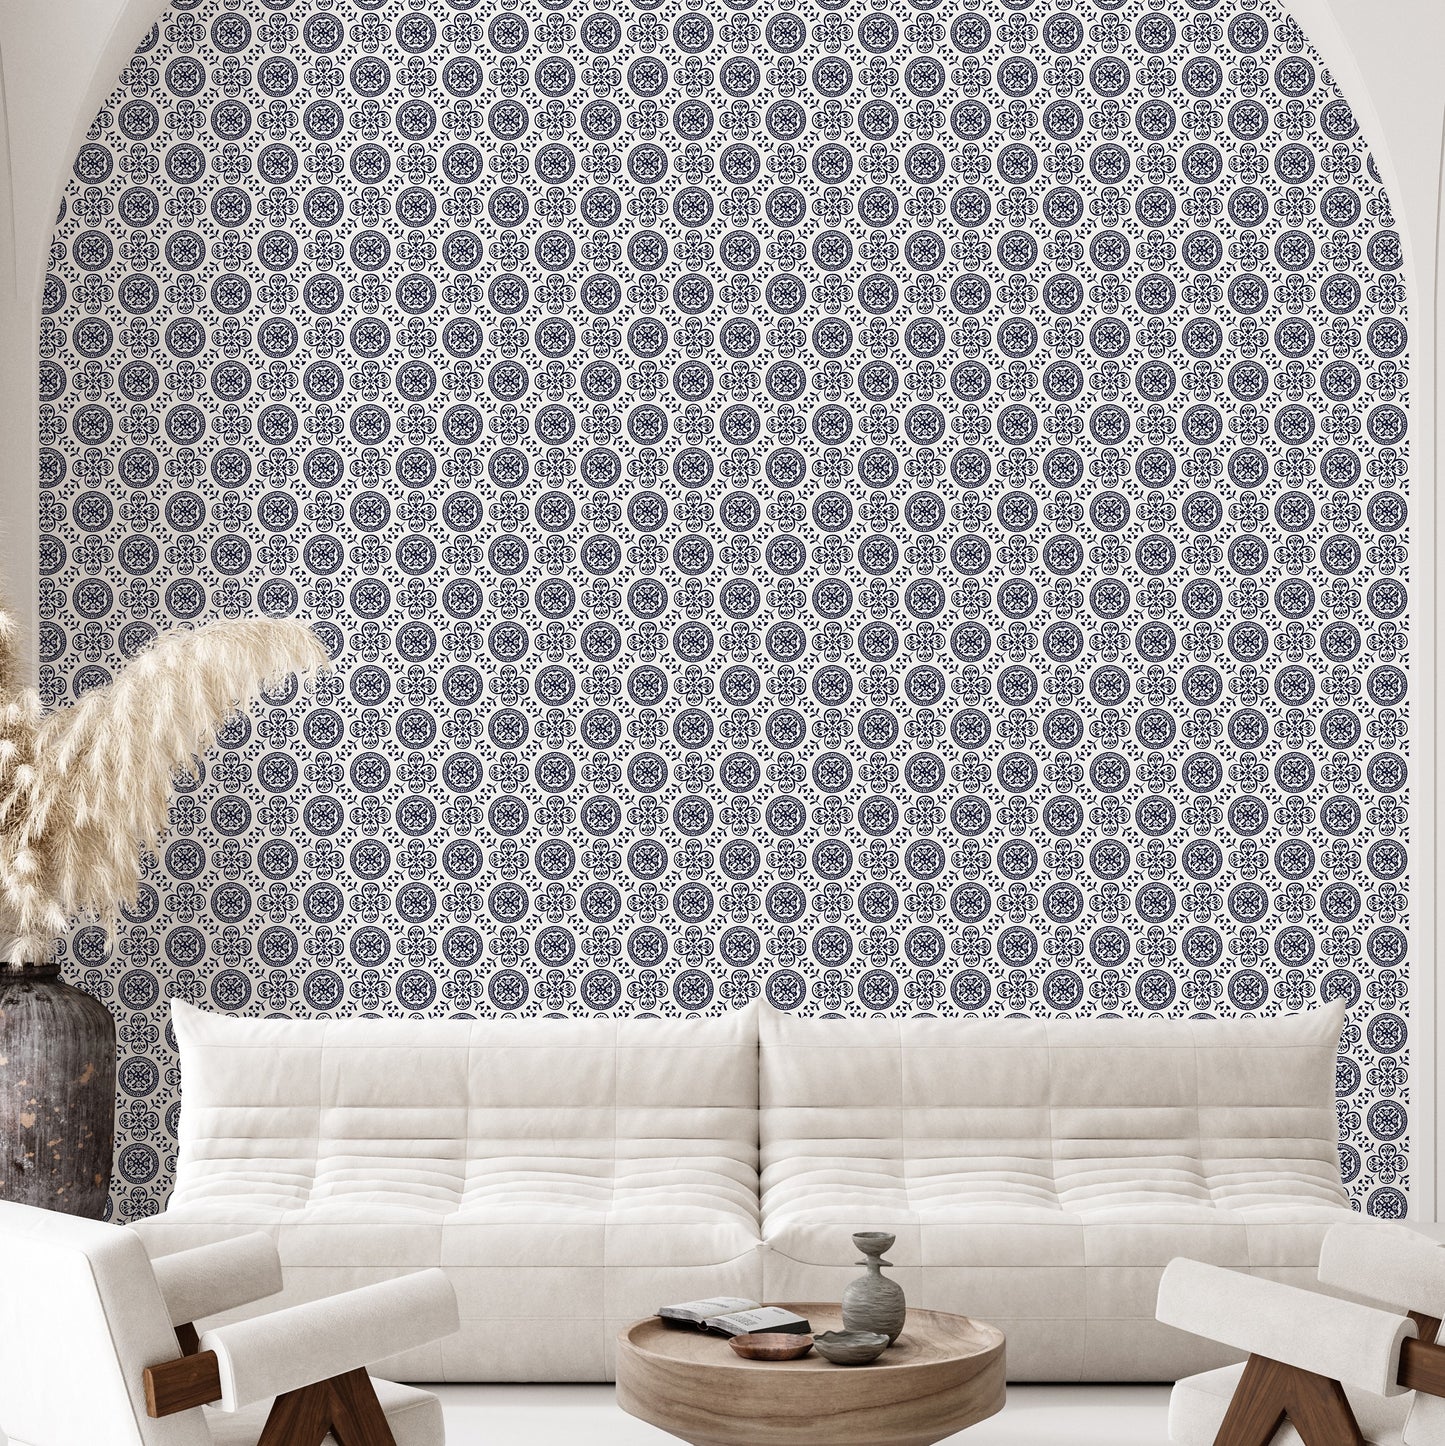 Spanish Tile Navy Geometric Wallpaper